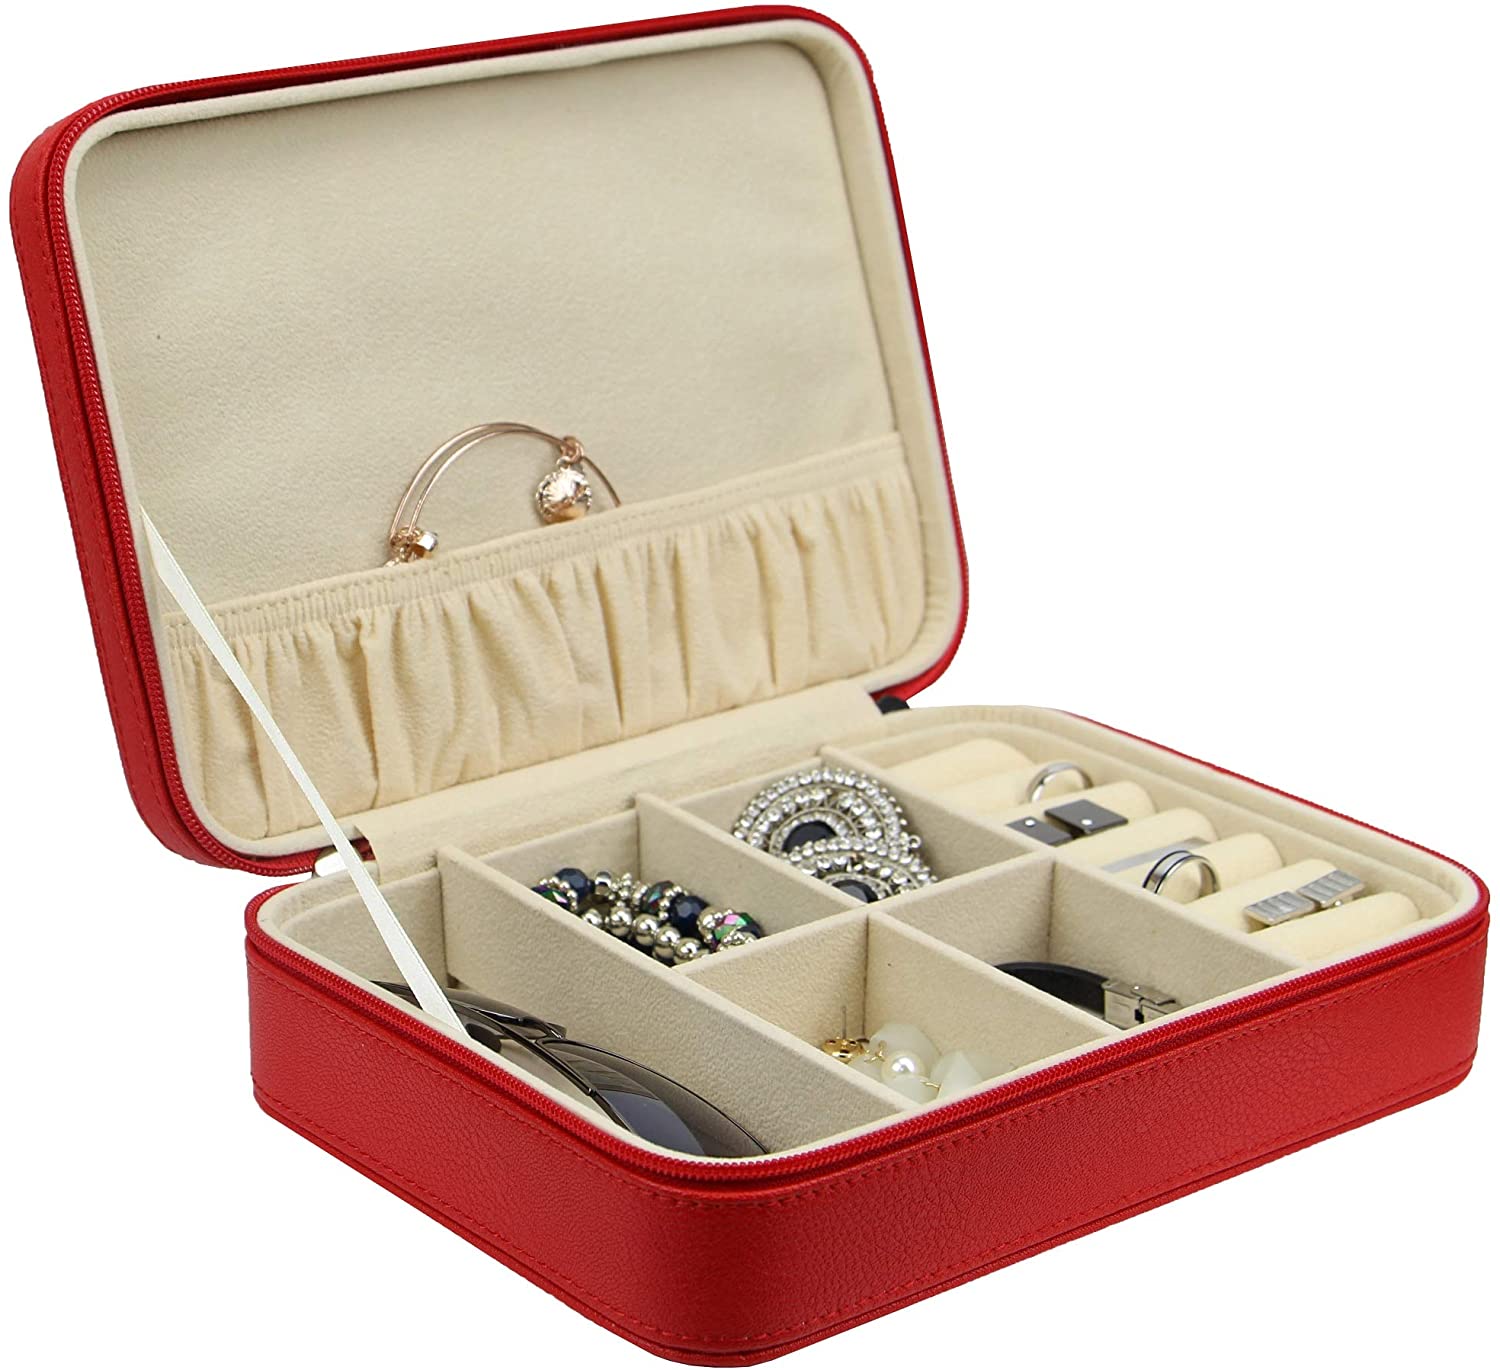 Decorebay Rosy Multi-Purpose Sunglasses and Jewelry Travel Case and Storage Box